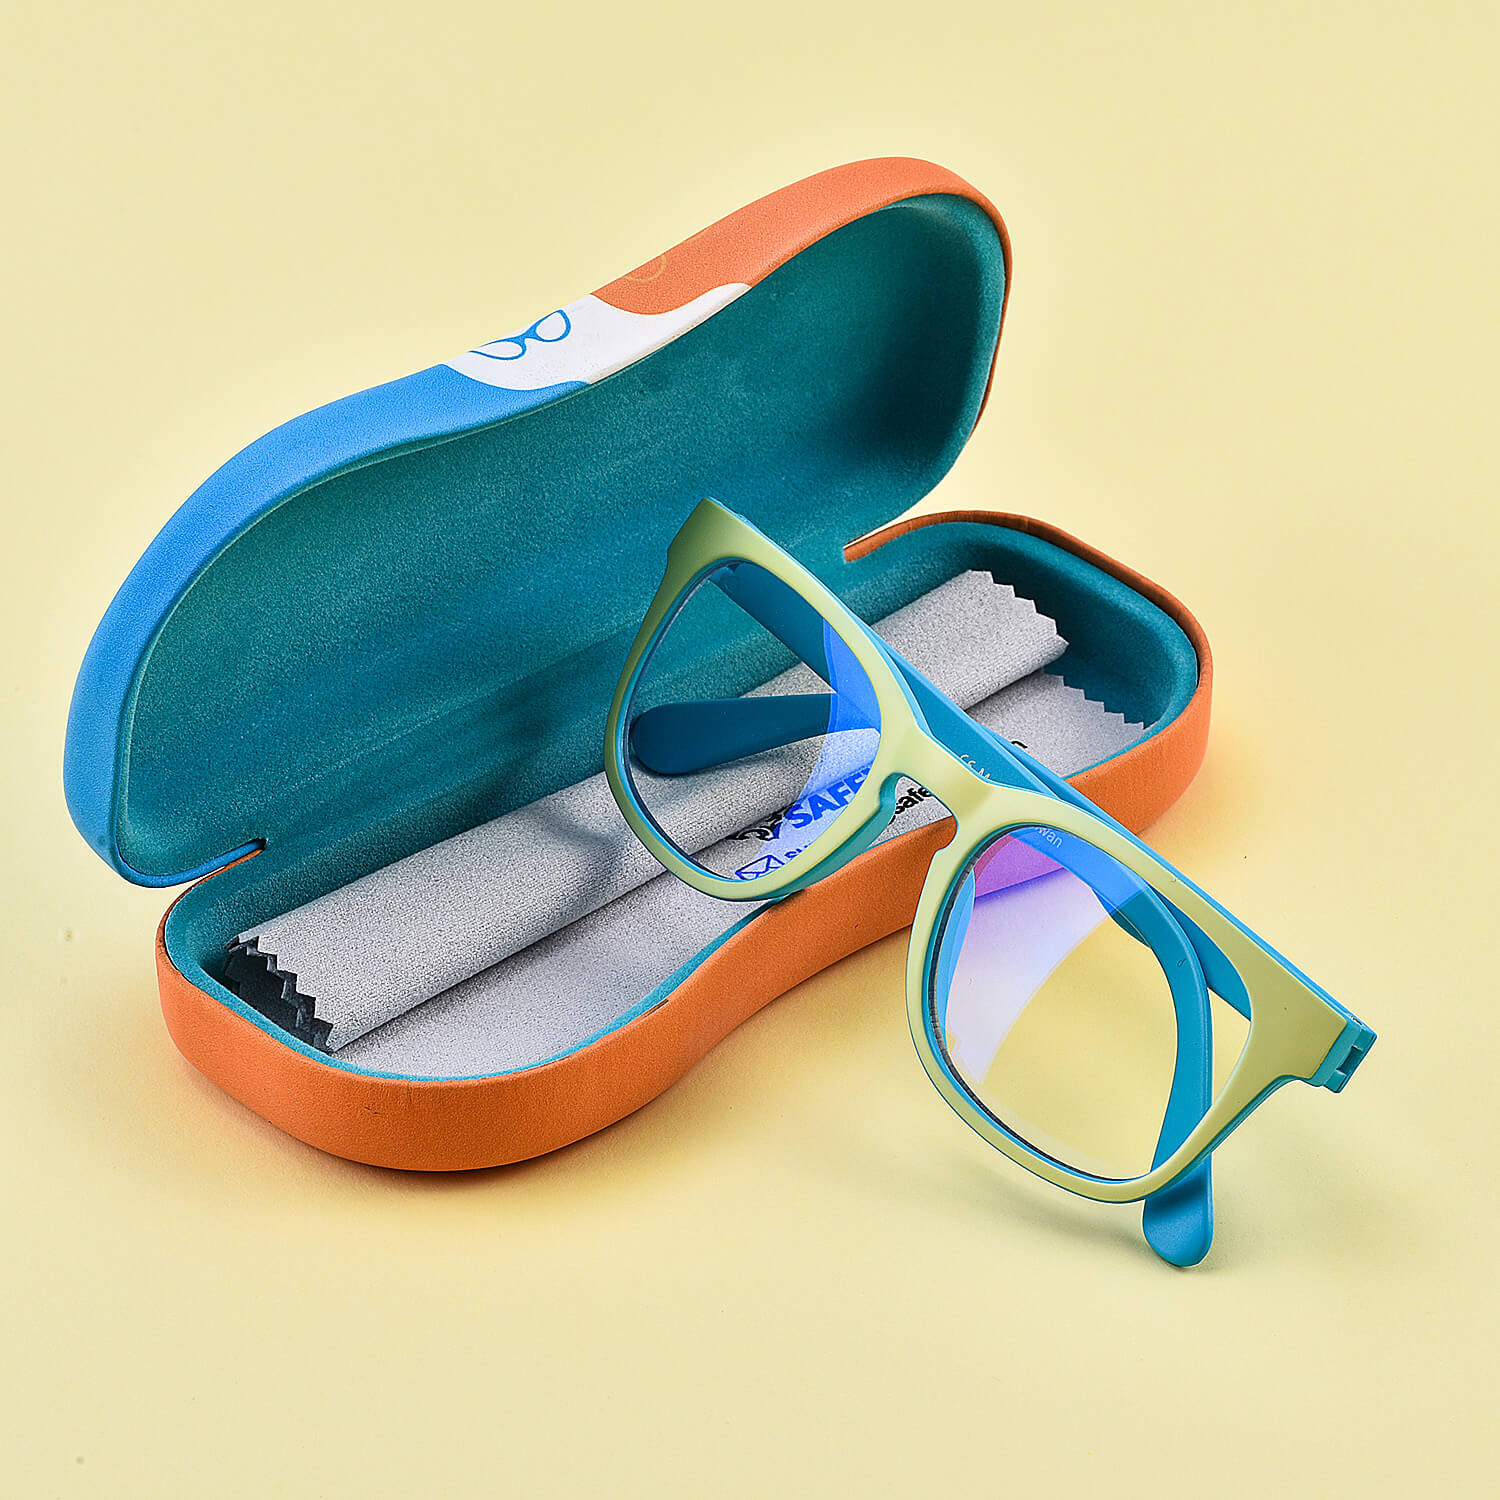 Transparente, blaues Licht blockierende Brille von Safeyear für Lesebrillen für Kinder